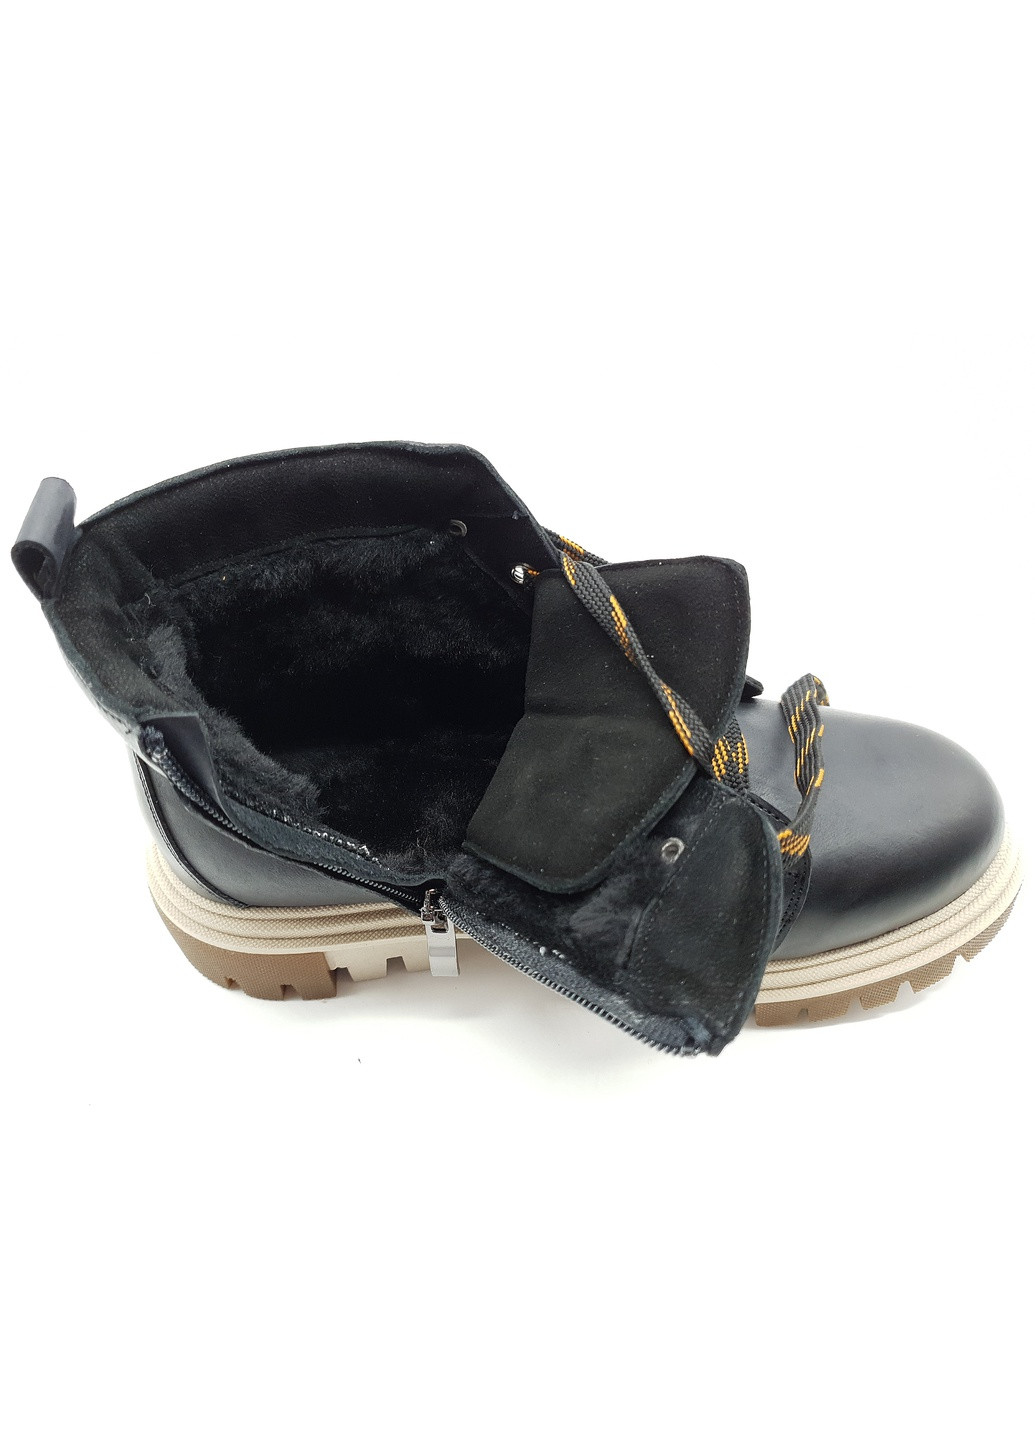 Осенние женские ботинки зимние черные кожаные vn-10-2 25,5 см (р) VALIENTE